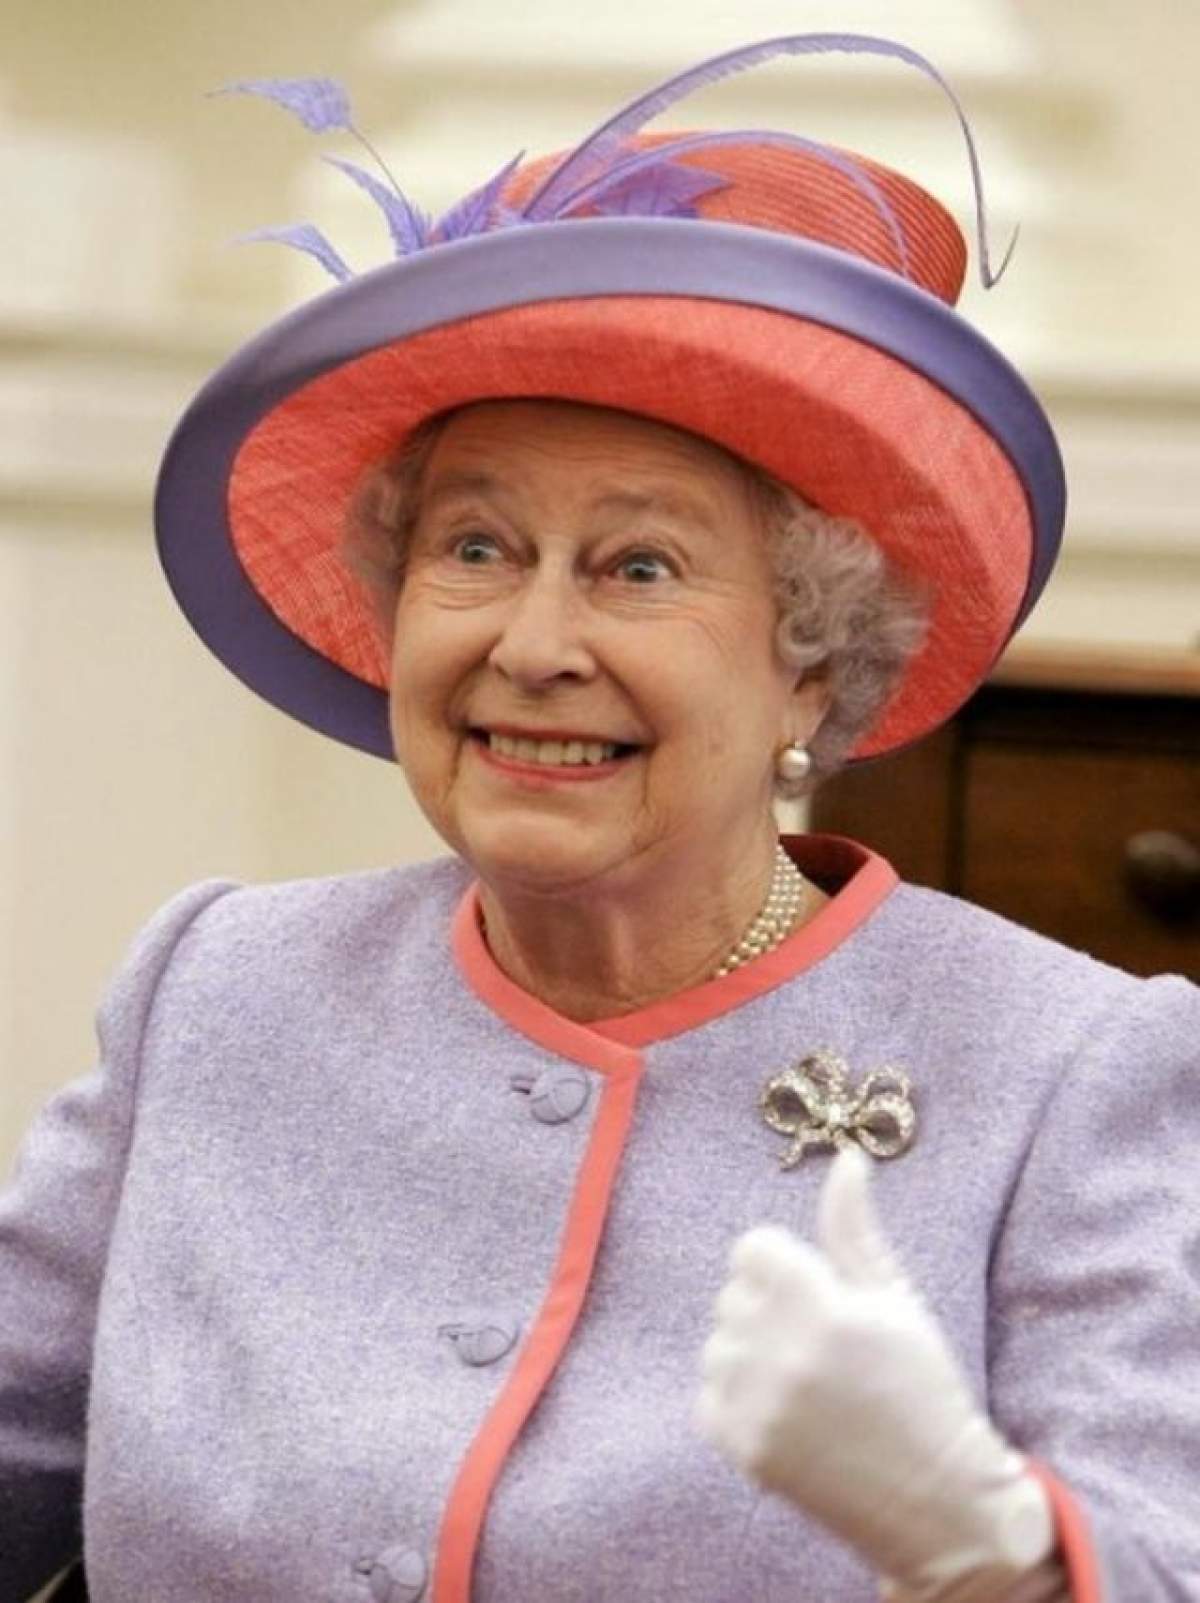 Astăzi este ziua de naştere a celei mai puternice femei din Anglia! Regina Elizabeta împlineşte 88 de ani!